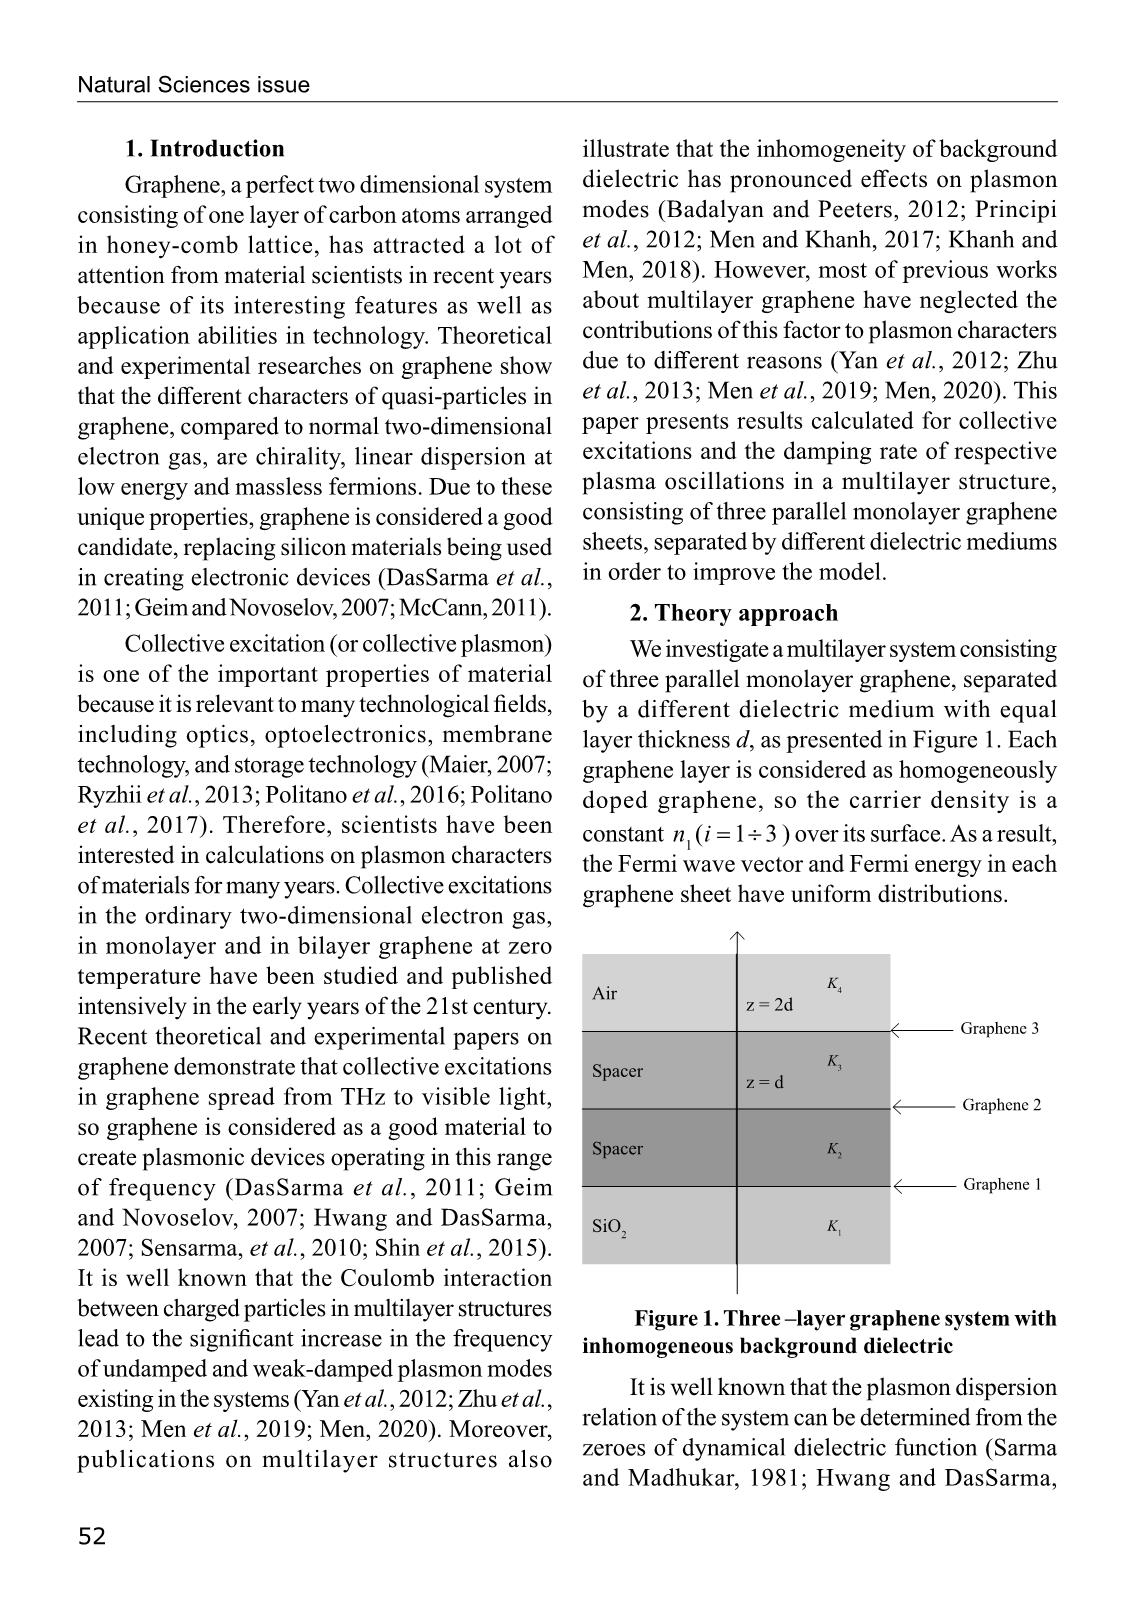 Phổ Plasmon trong hệ ba lớp Graphene với điện môi nền không đồng nhất trang 2